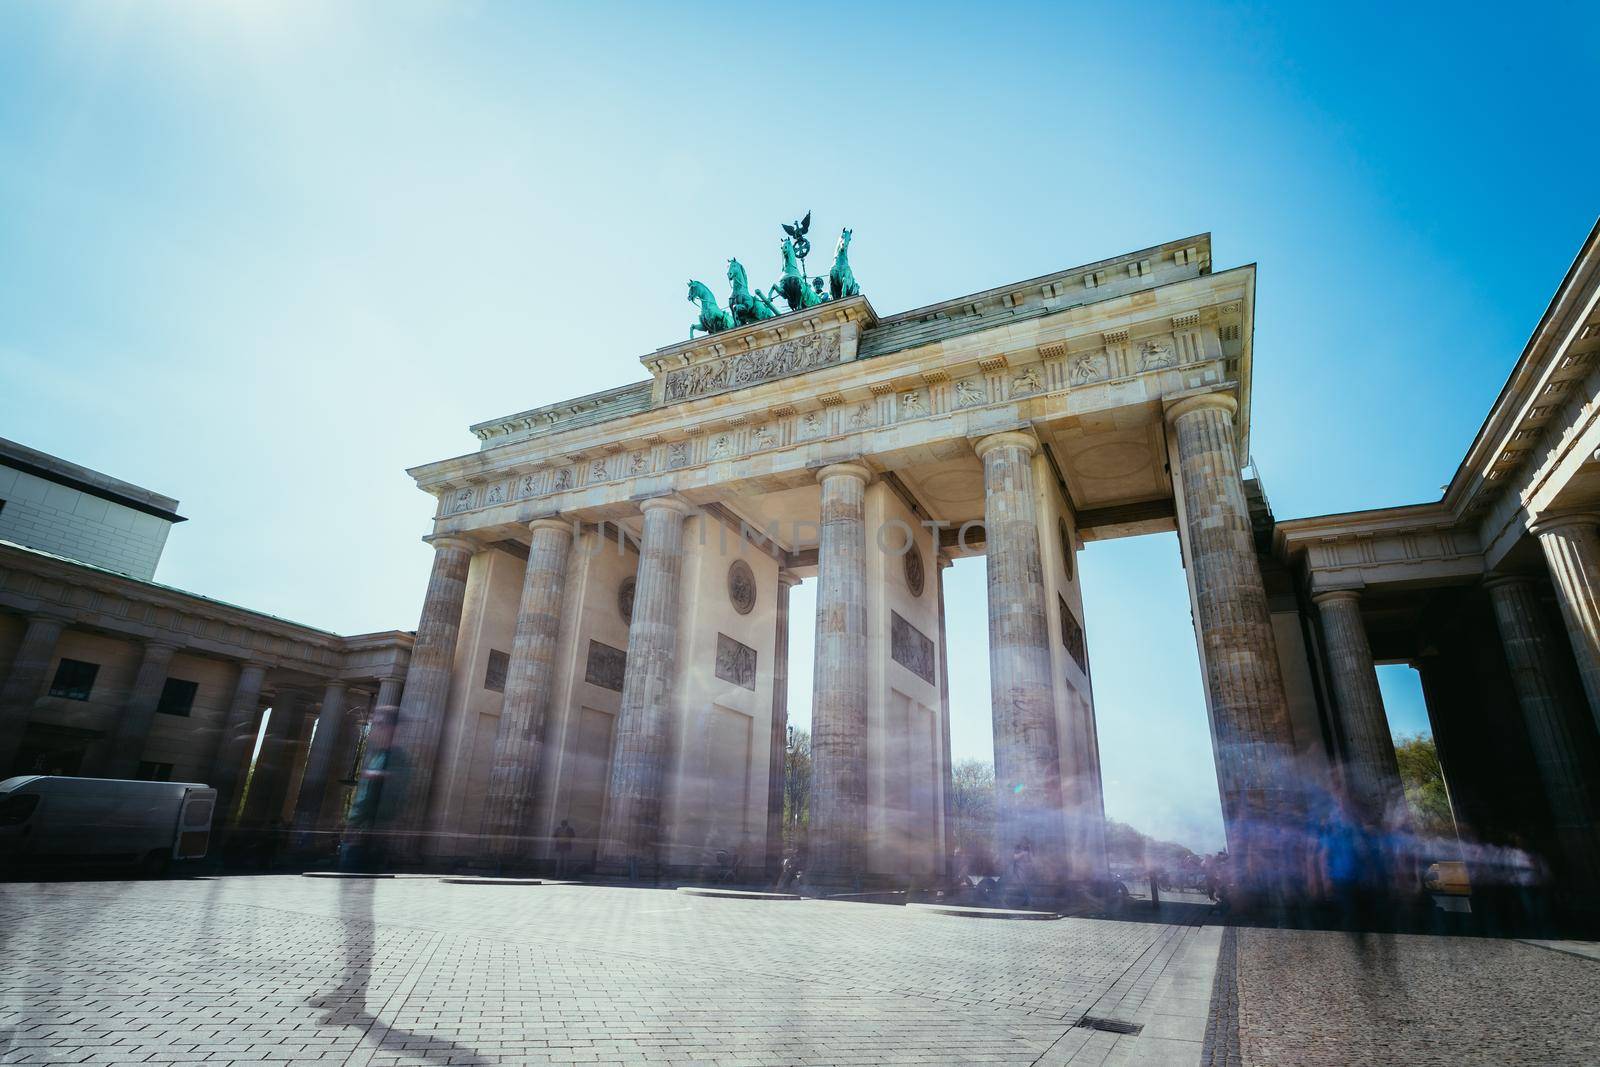 The Brandenburger Tor, Brandenburger Gate in Berlin, Germany. Tourist attraction. by Daxenbichler